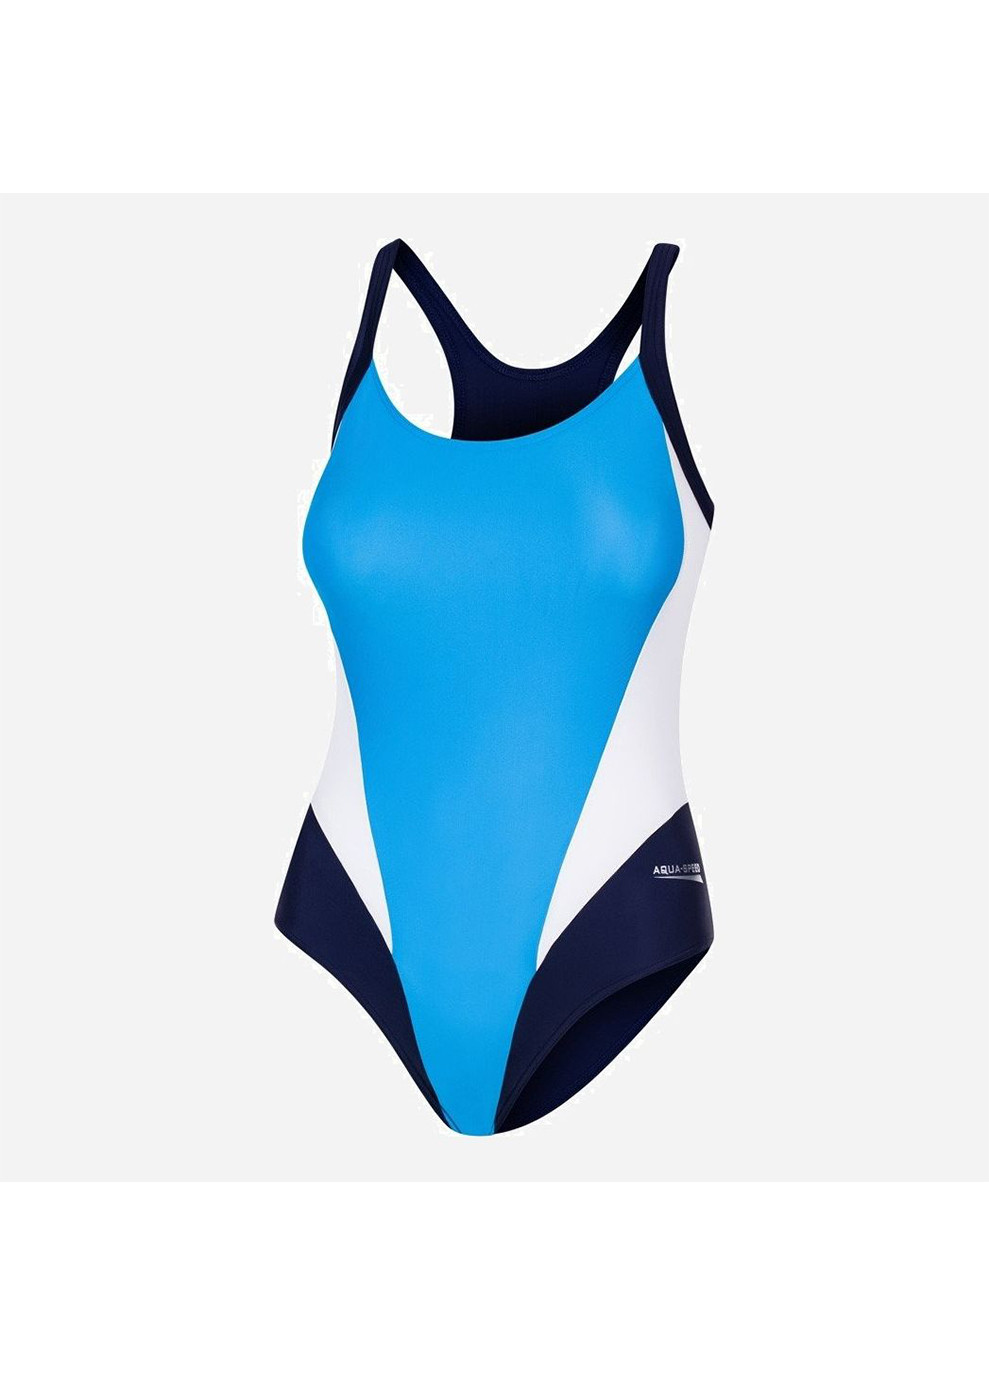 Голубой демисезонный купальник слитный женский sonia 40 (l) бирюза/синий/белый Aqua Speed